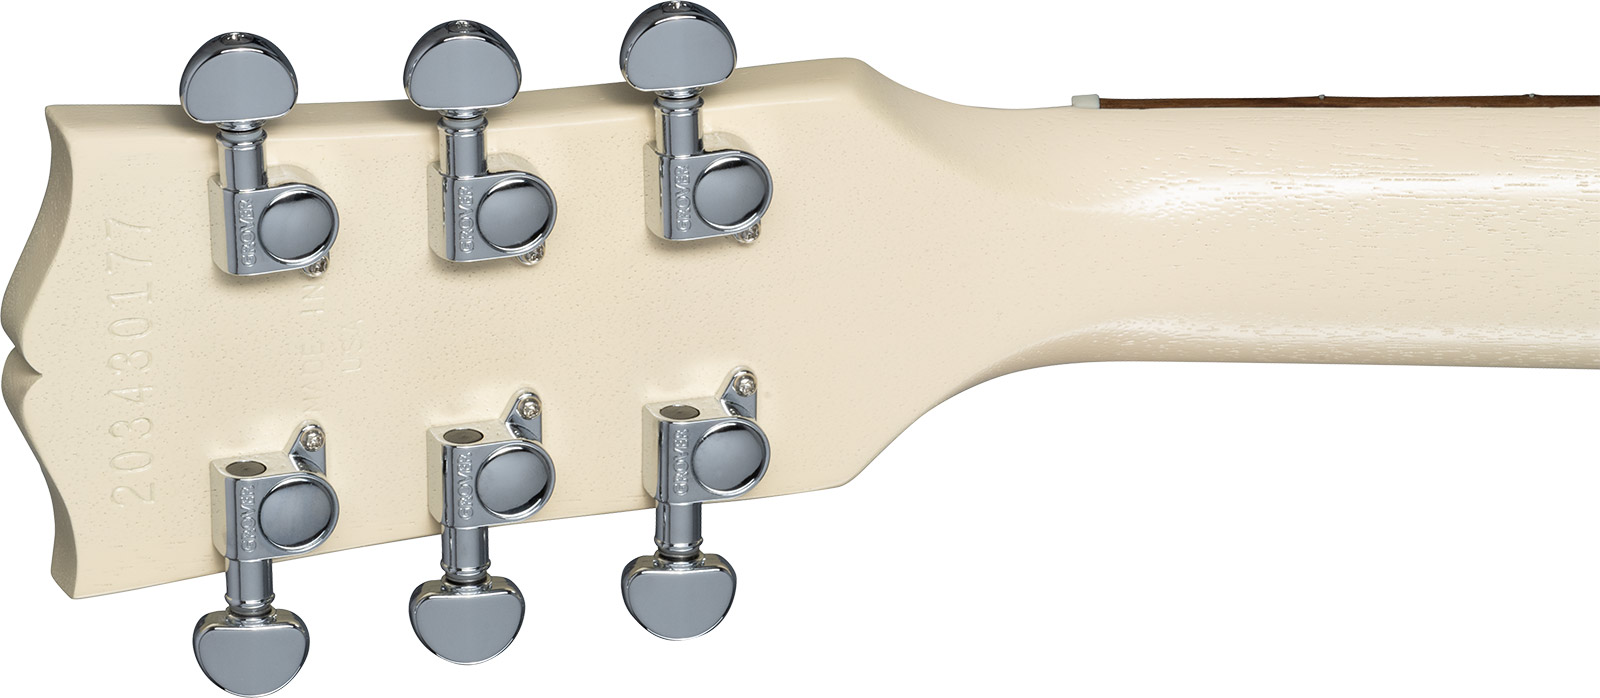 Gibson Les Paul Modern Lite 2h Ht Rw - Tv Wheat - Single cut electric guitar - Variation 4